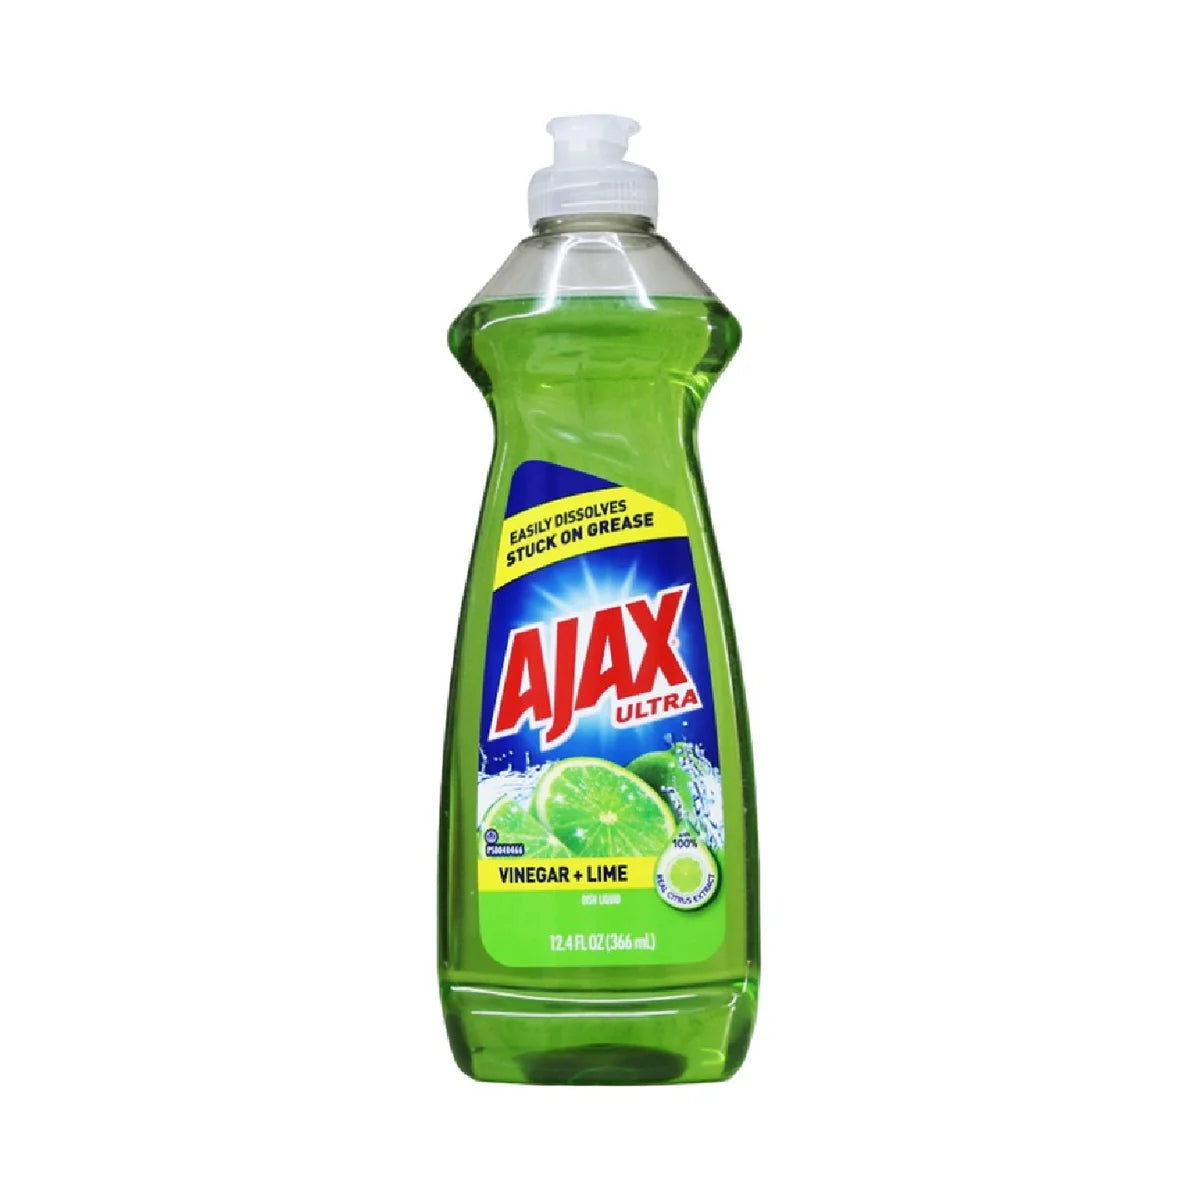 Ajax Ultra Liquid Dish Soap Vinegar + Lime 12.4fl oz